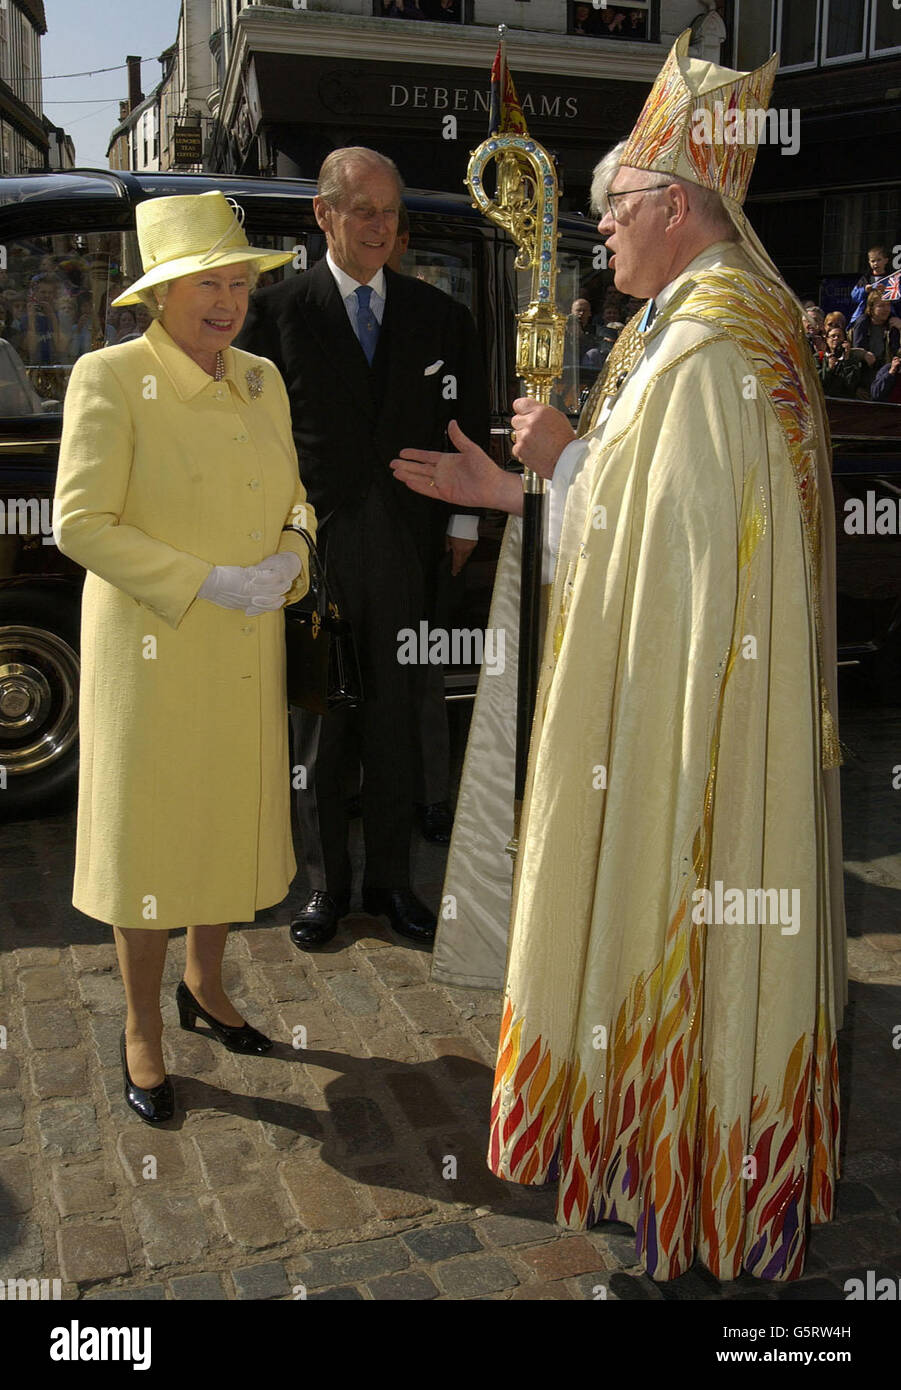 Die britische Königin Elizabeth II. Und der Herzog von Edinburgh (Mitte) werden vom Erzbischof von Canterbury, Doktor George Carey, in der Kathedrale von Canterbury zu einem königlichen Maunday-Gottesdienst begrüßt. * während des einstündigen Dienstes überreichte die Königin 76 Frauen und 76 Männer - entsprechend ihrem Alter im nächsten Monat - zwei Tüten Grüngeld. In jedem kleinen roten Beutel war eine neue 5-Münze und ein 50p-Stück, das das Jubiläum markiert, während in einem weißen Beutel war 76p im Wert von besonderen Grüngeld. Stockfoto